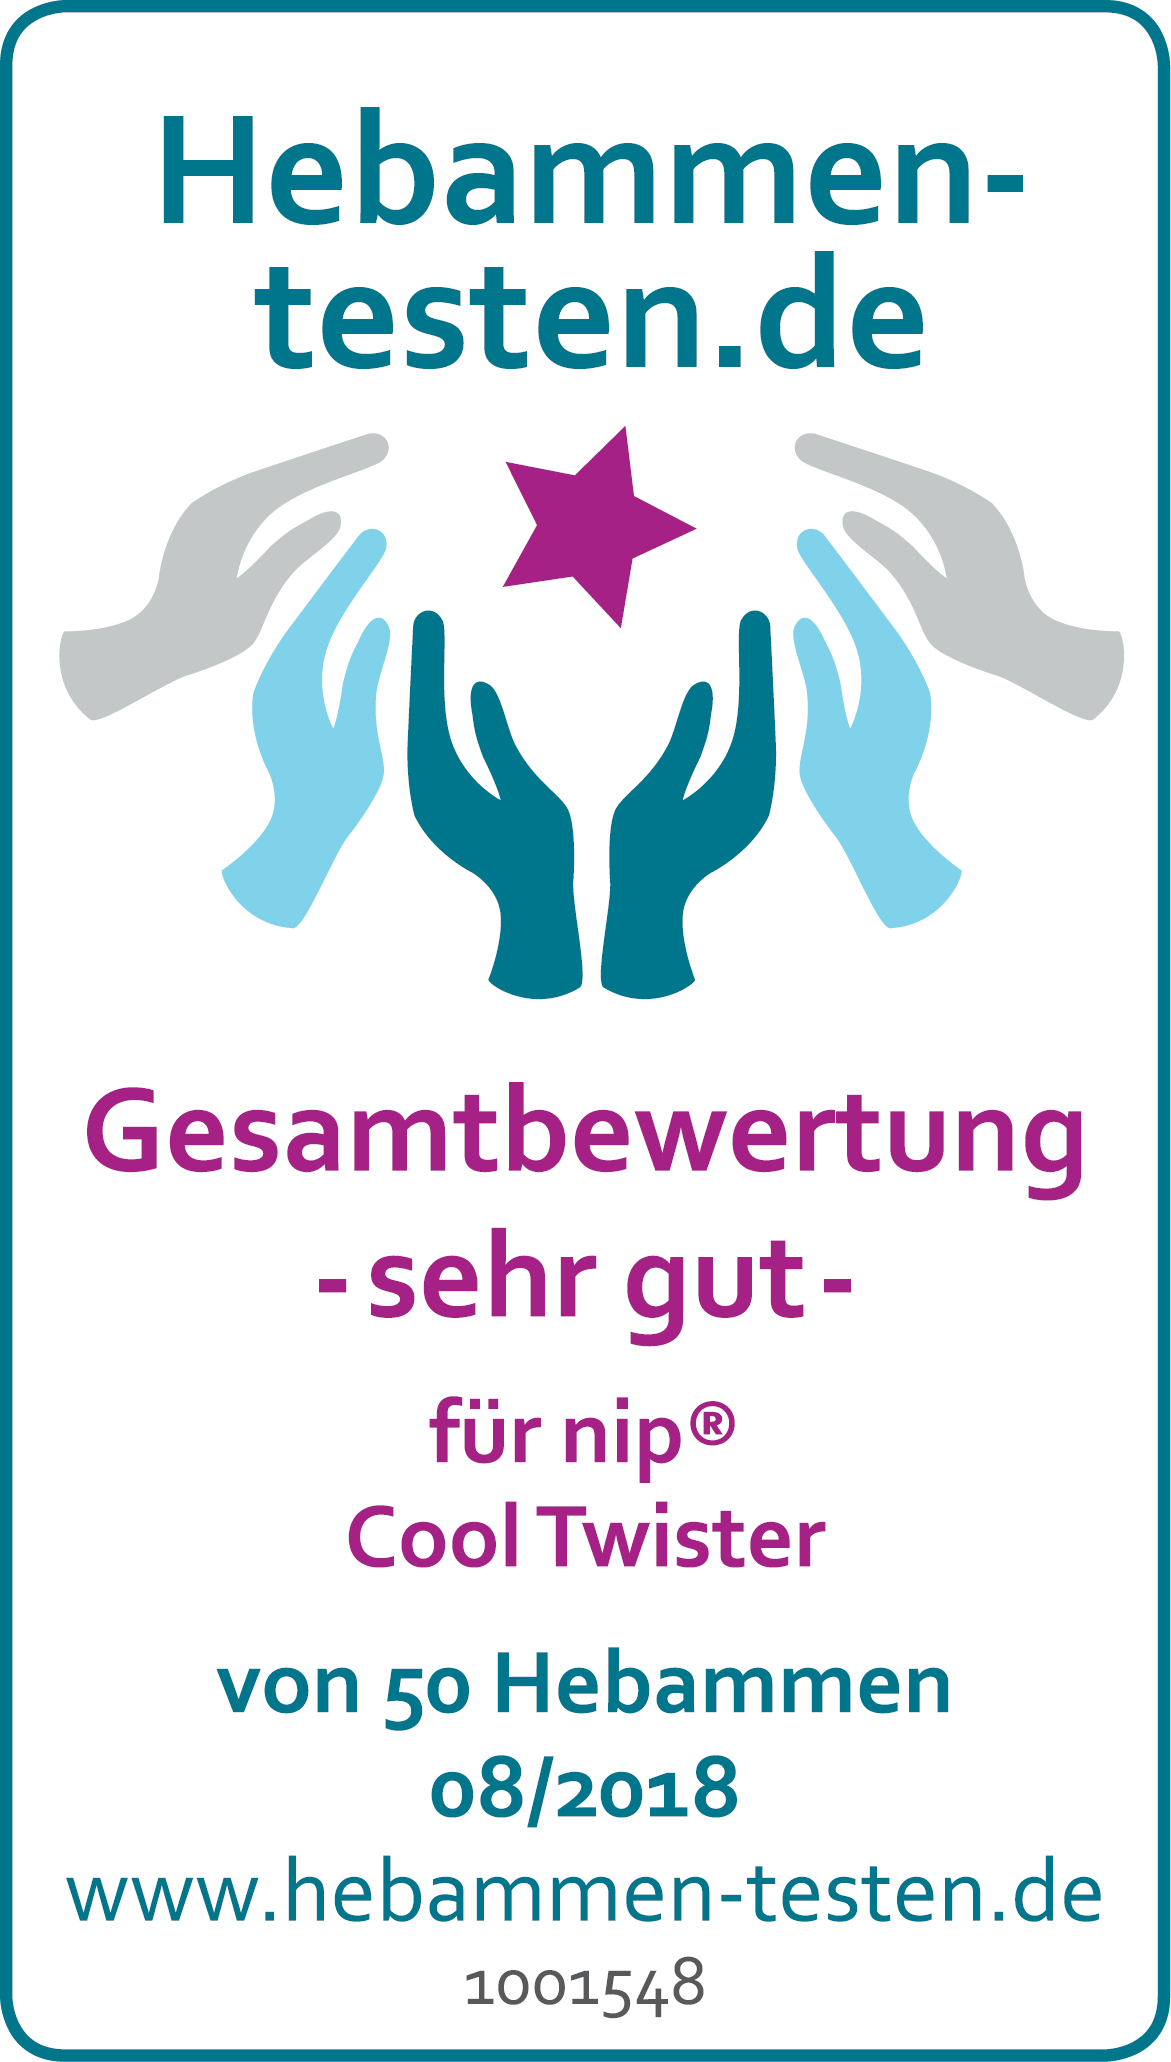 Hebammen-testen.de Siegel für nip Cool Twister Gesamtbewertung sehr gut von 50 Hebammen im August 2018 getestet.